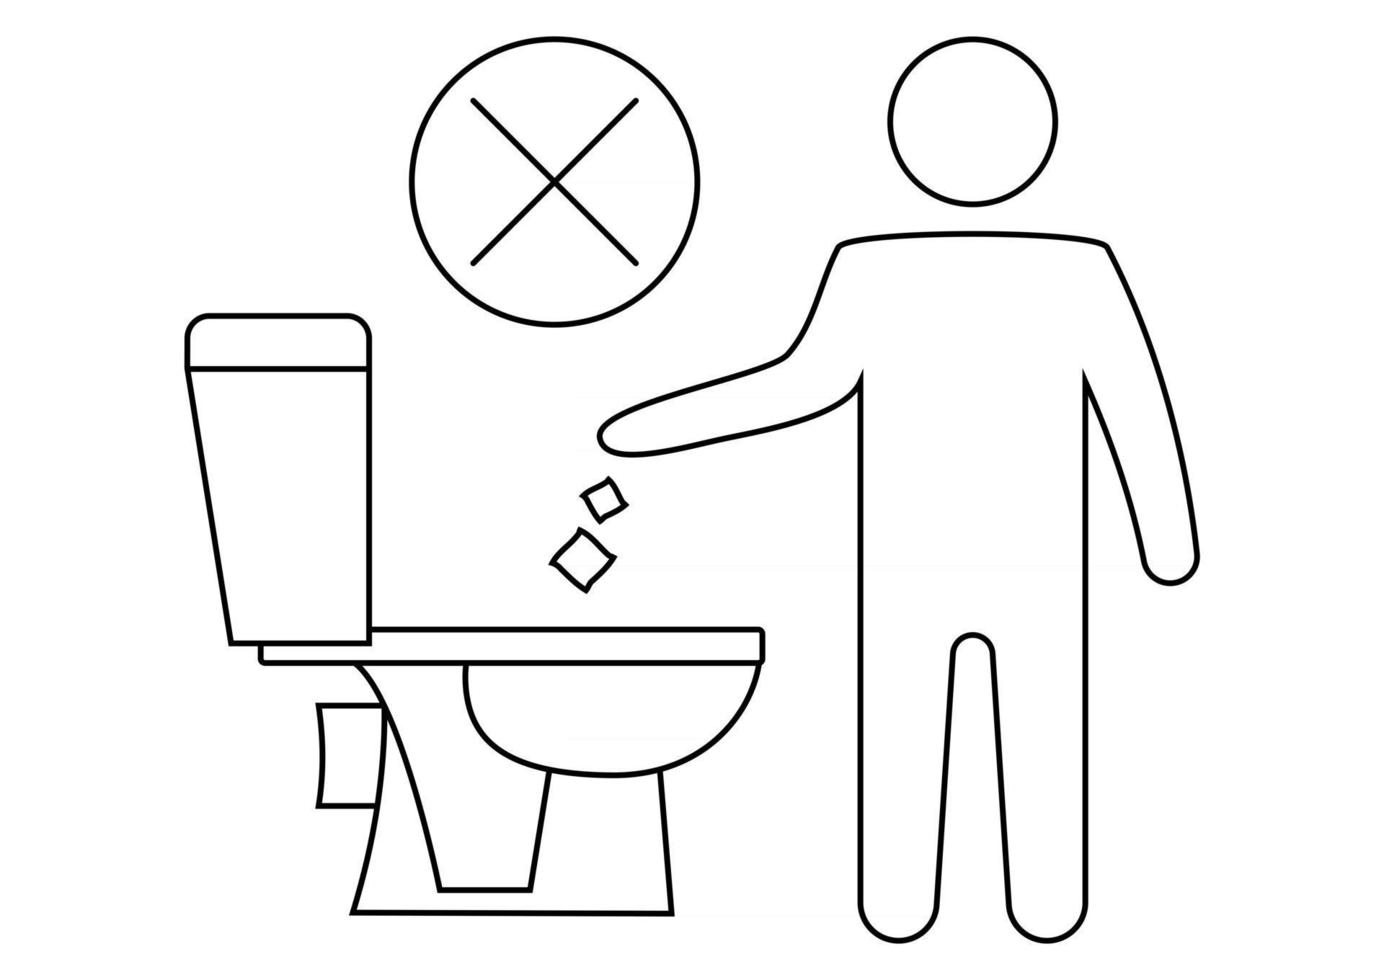 werfen Sie keinen Abfall in die Toilette. sauber halten, unterzeichnen. die Silhouette eines Mannes, Müll in eine Toilette werfen. verbotenes Symbol. kein Littering, Warnsymbol. allgemein zugängliche Information. bearbeitbarer Strich vektor